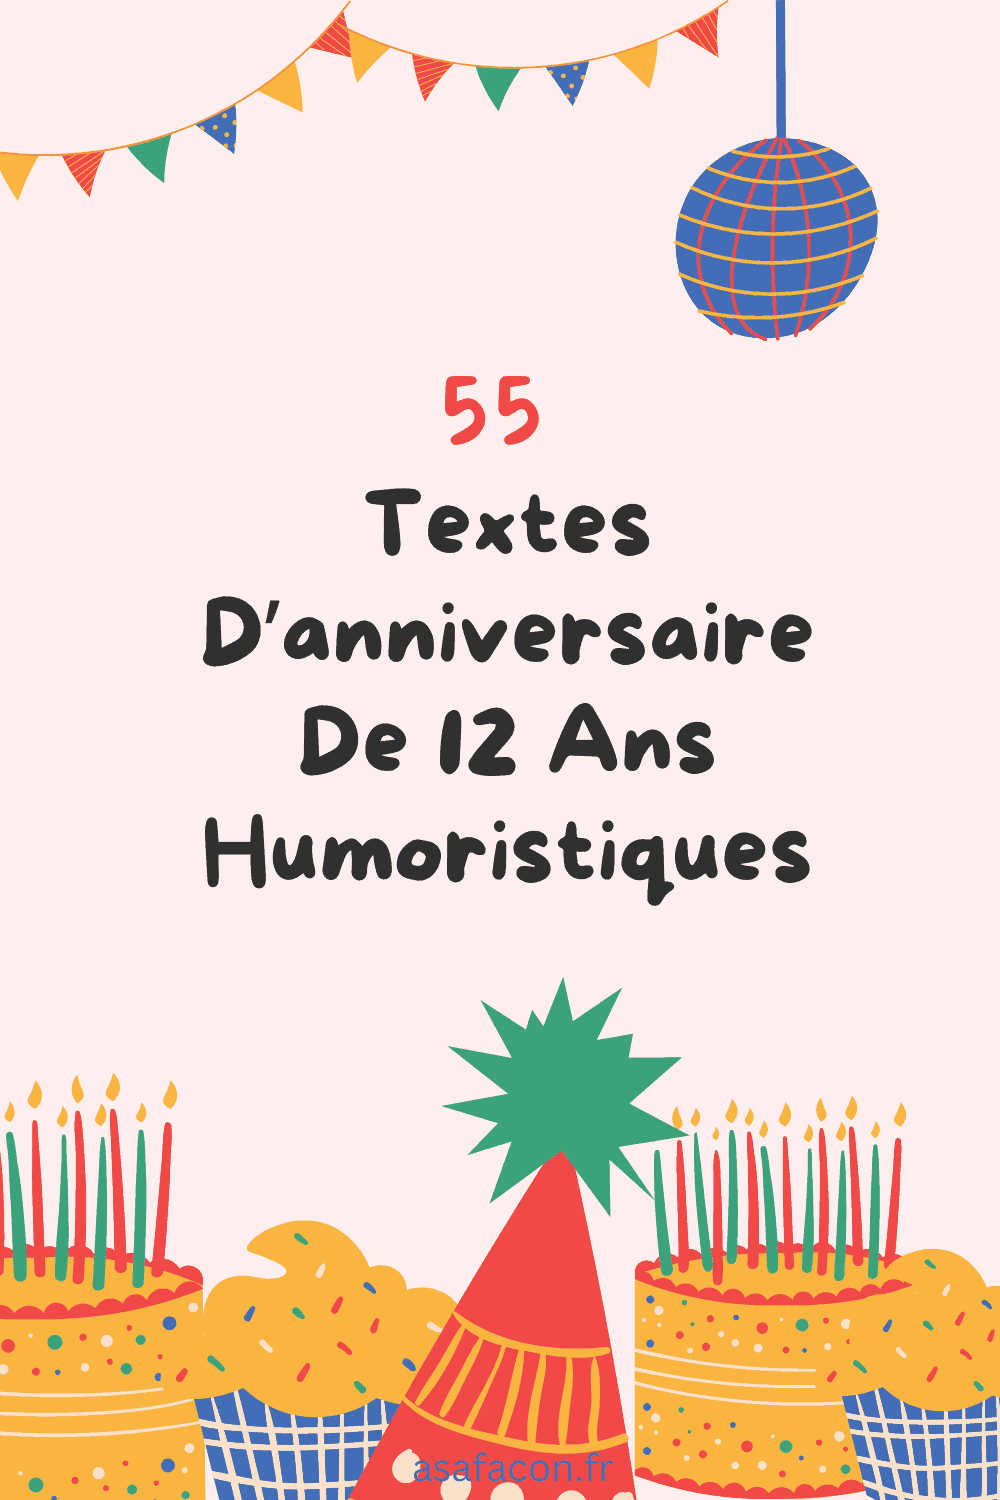 55 Textes D’anniversaire De 12 Ans Humoristiques